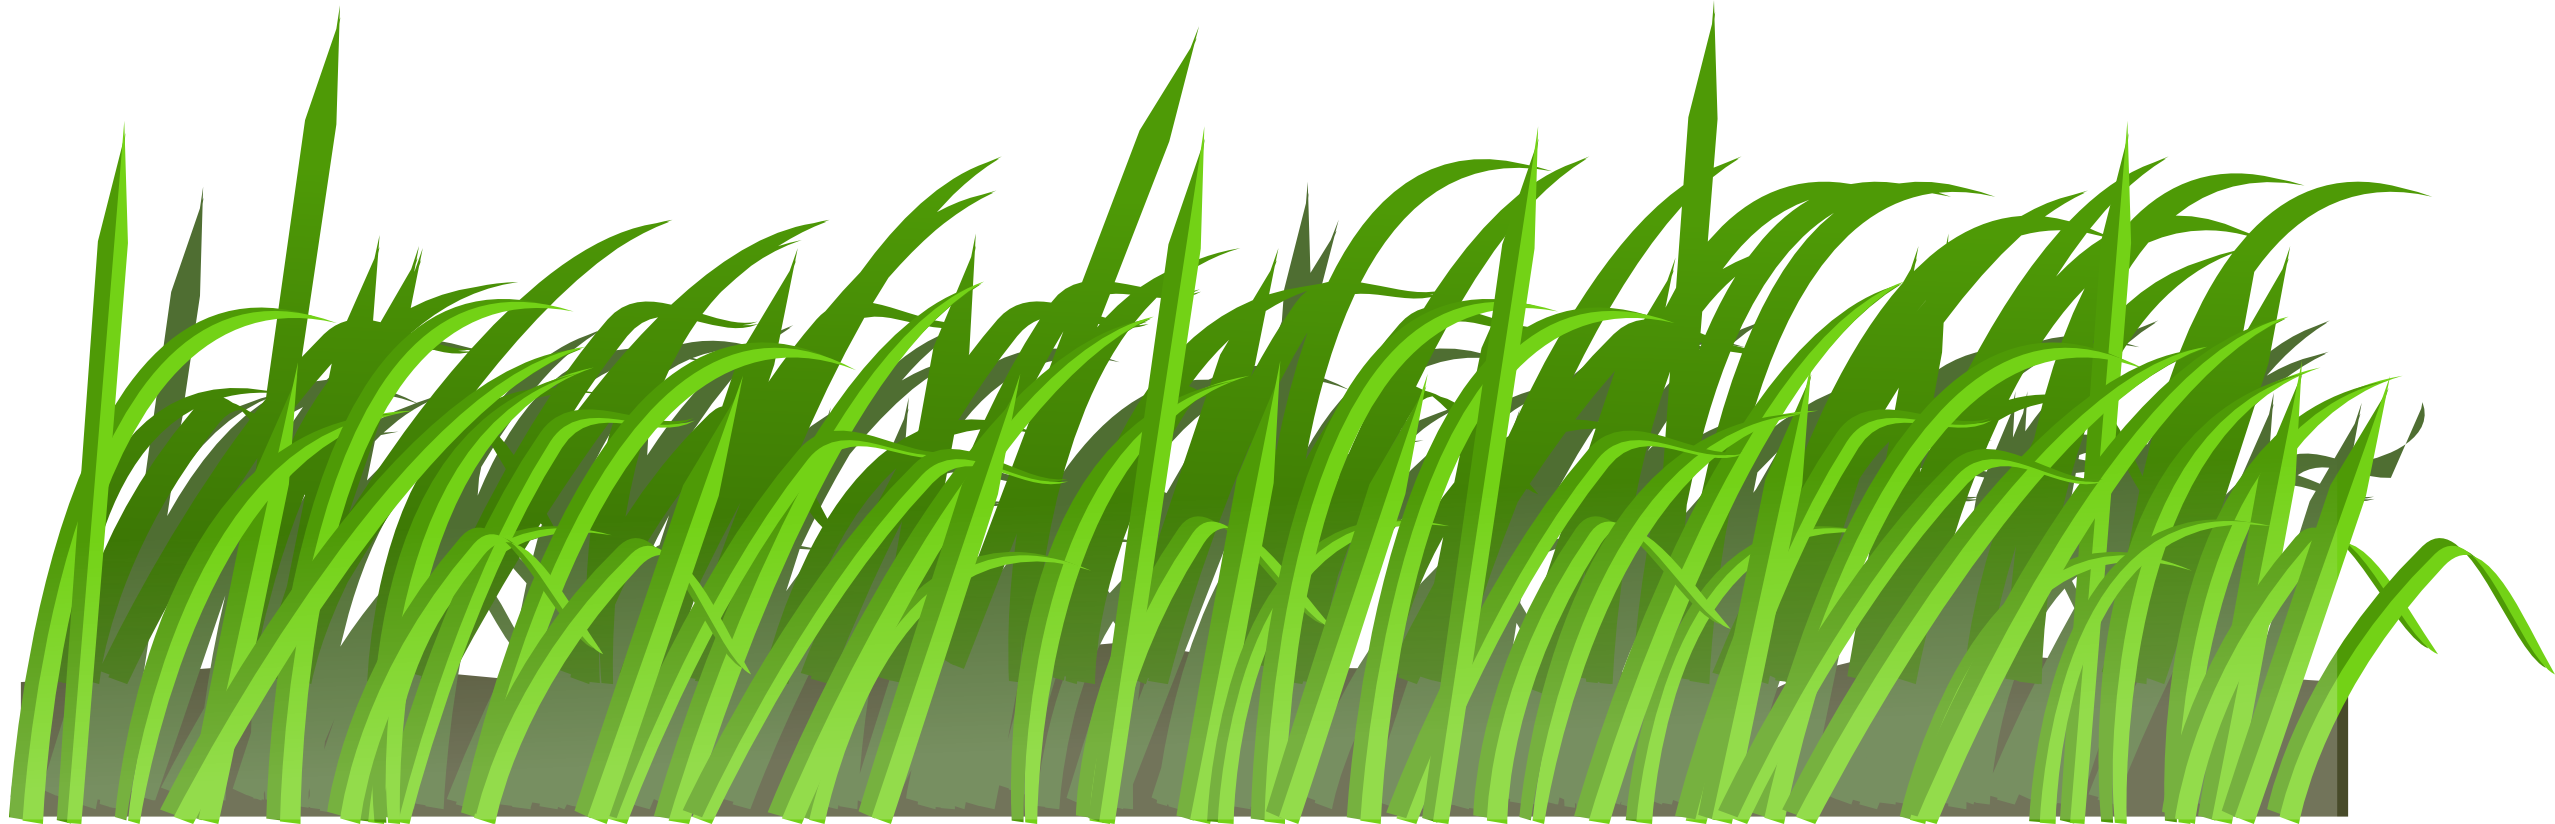 cartoon grass clipart - photo #9